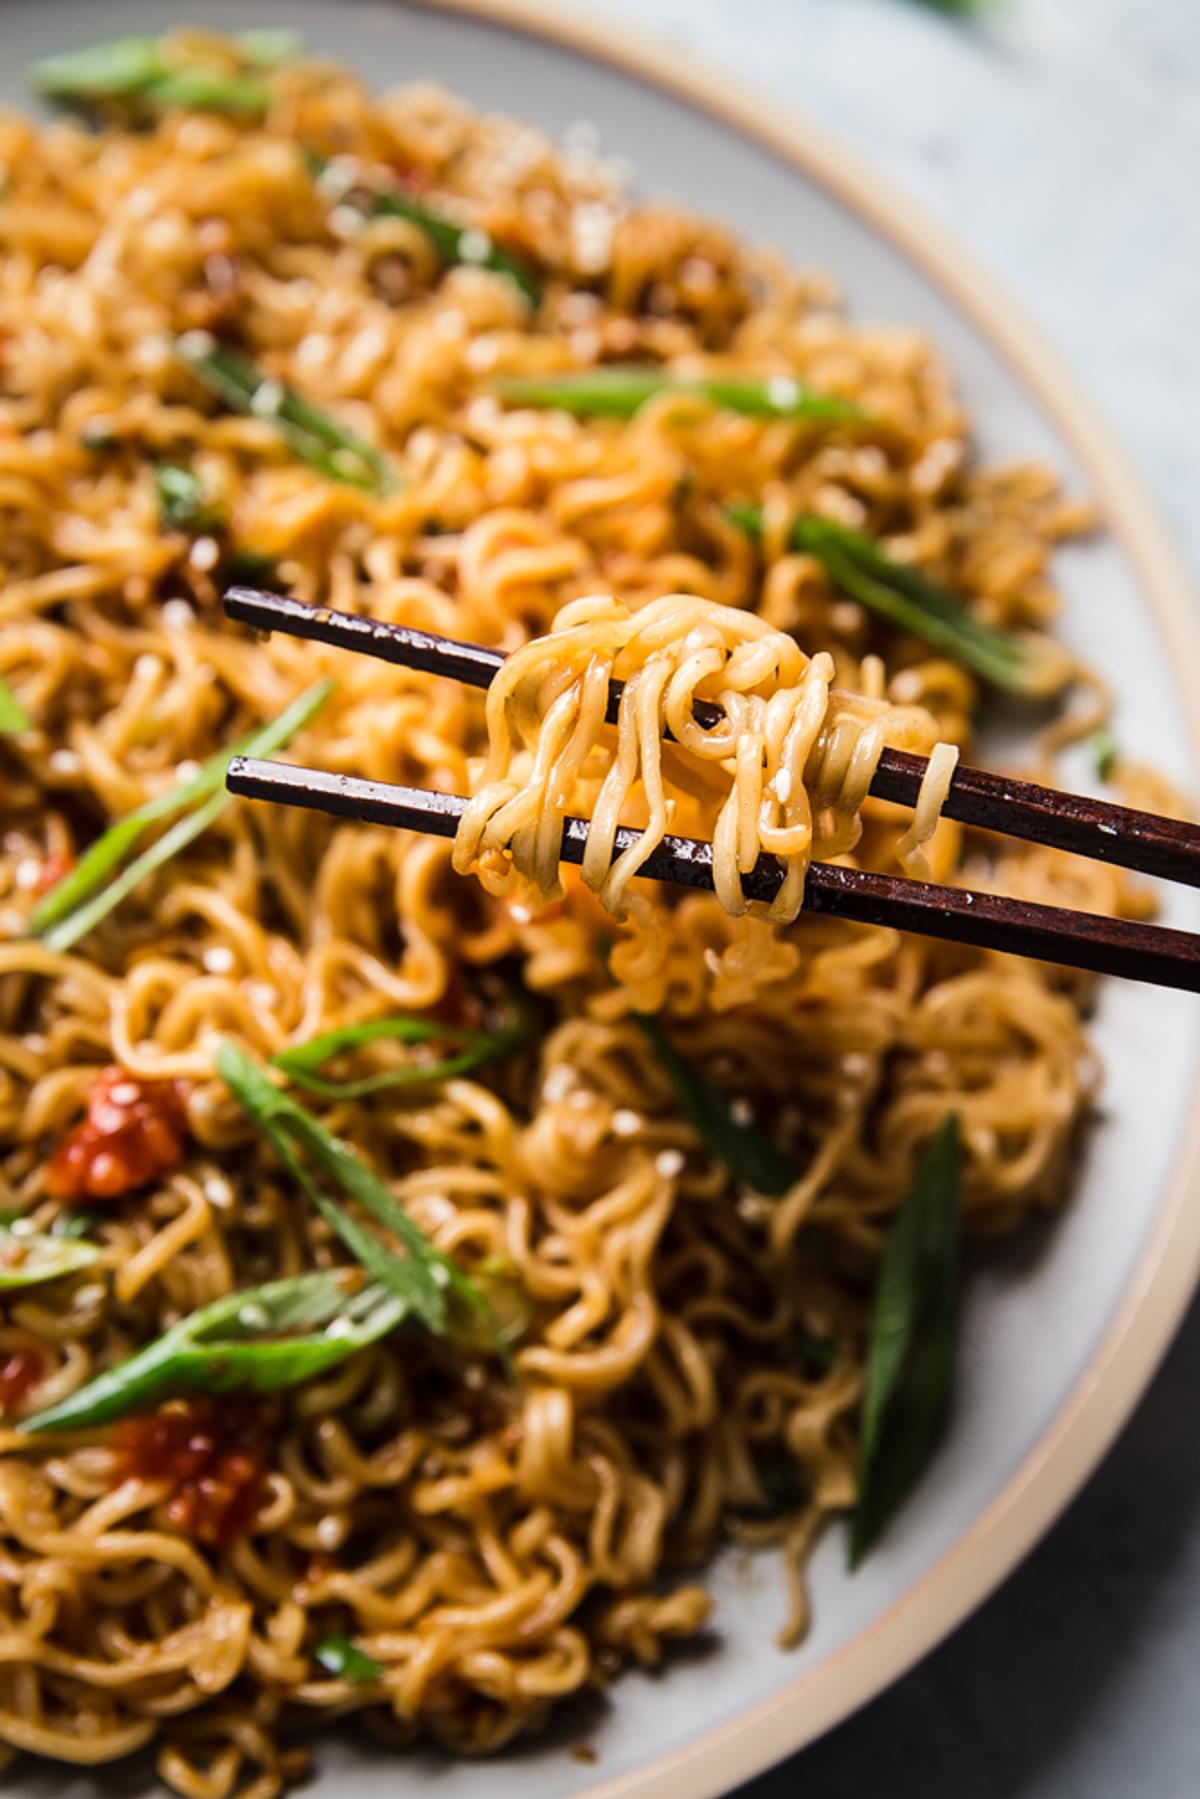 Sesame garlic ramen noodles on a plate with chopsticks